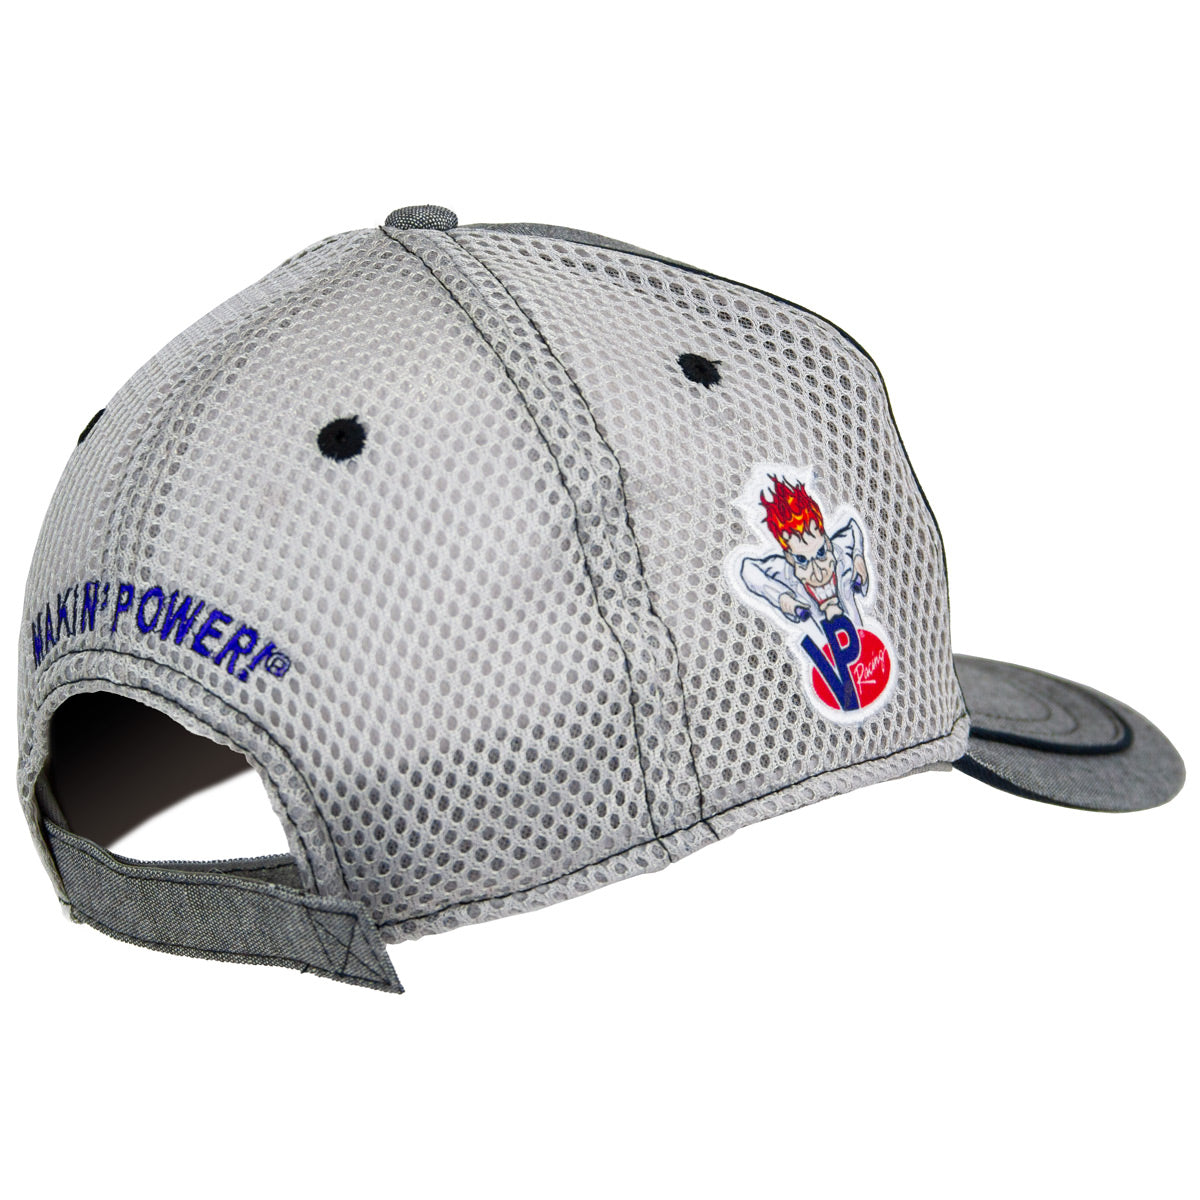 VP Racing Hat - Grey